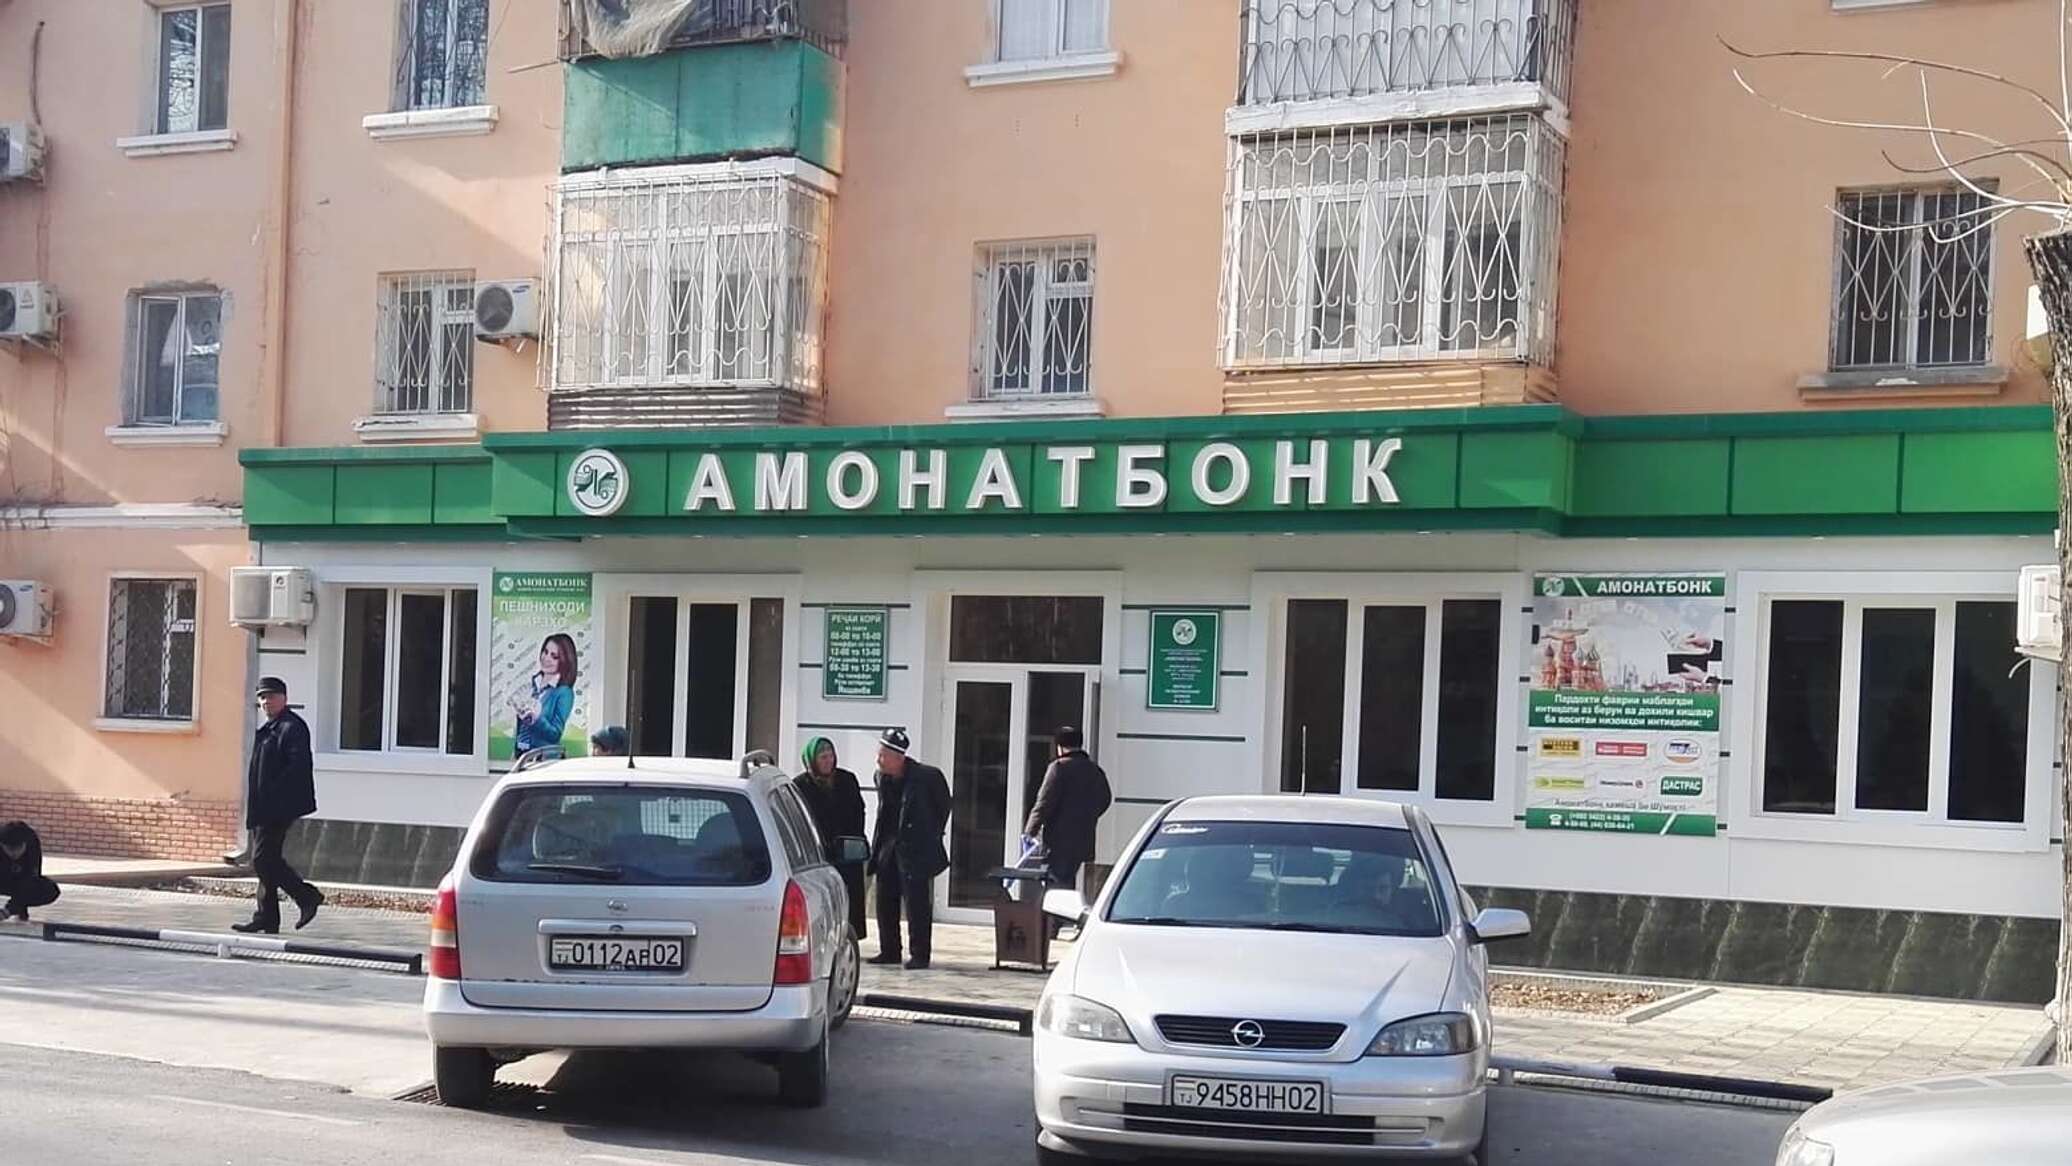 Амонатбонк точикистон. Амонатбанк Таджикистана. Карта Амонатбонк Таджикистан. Банк Амонатбонк Таджикистан. Амонатбонк логотип.